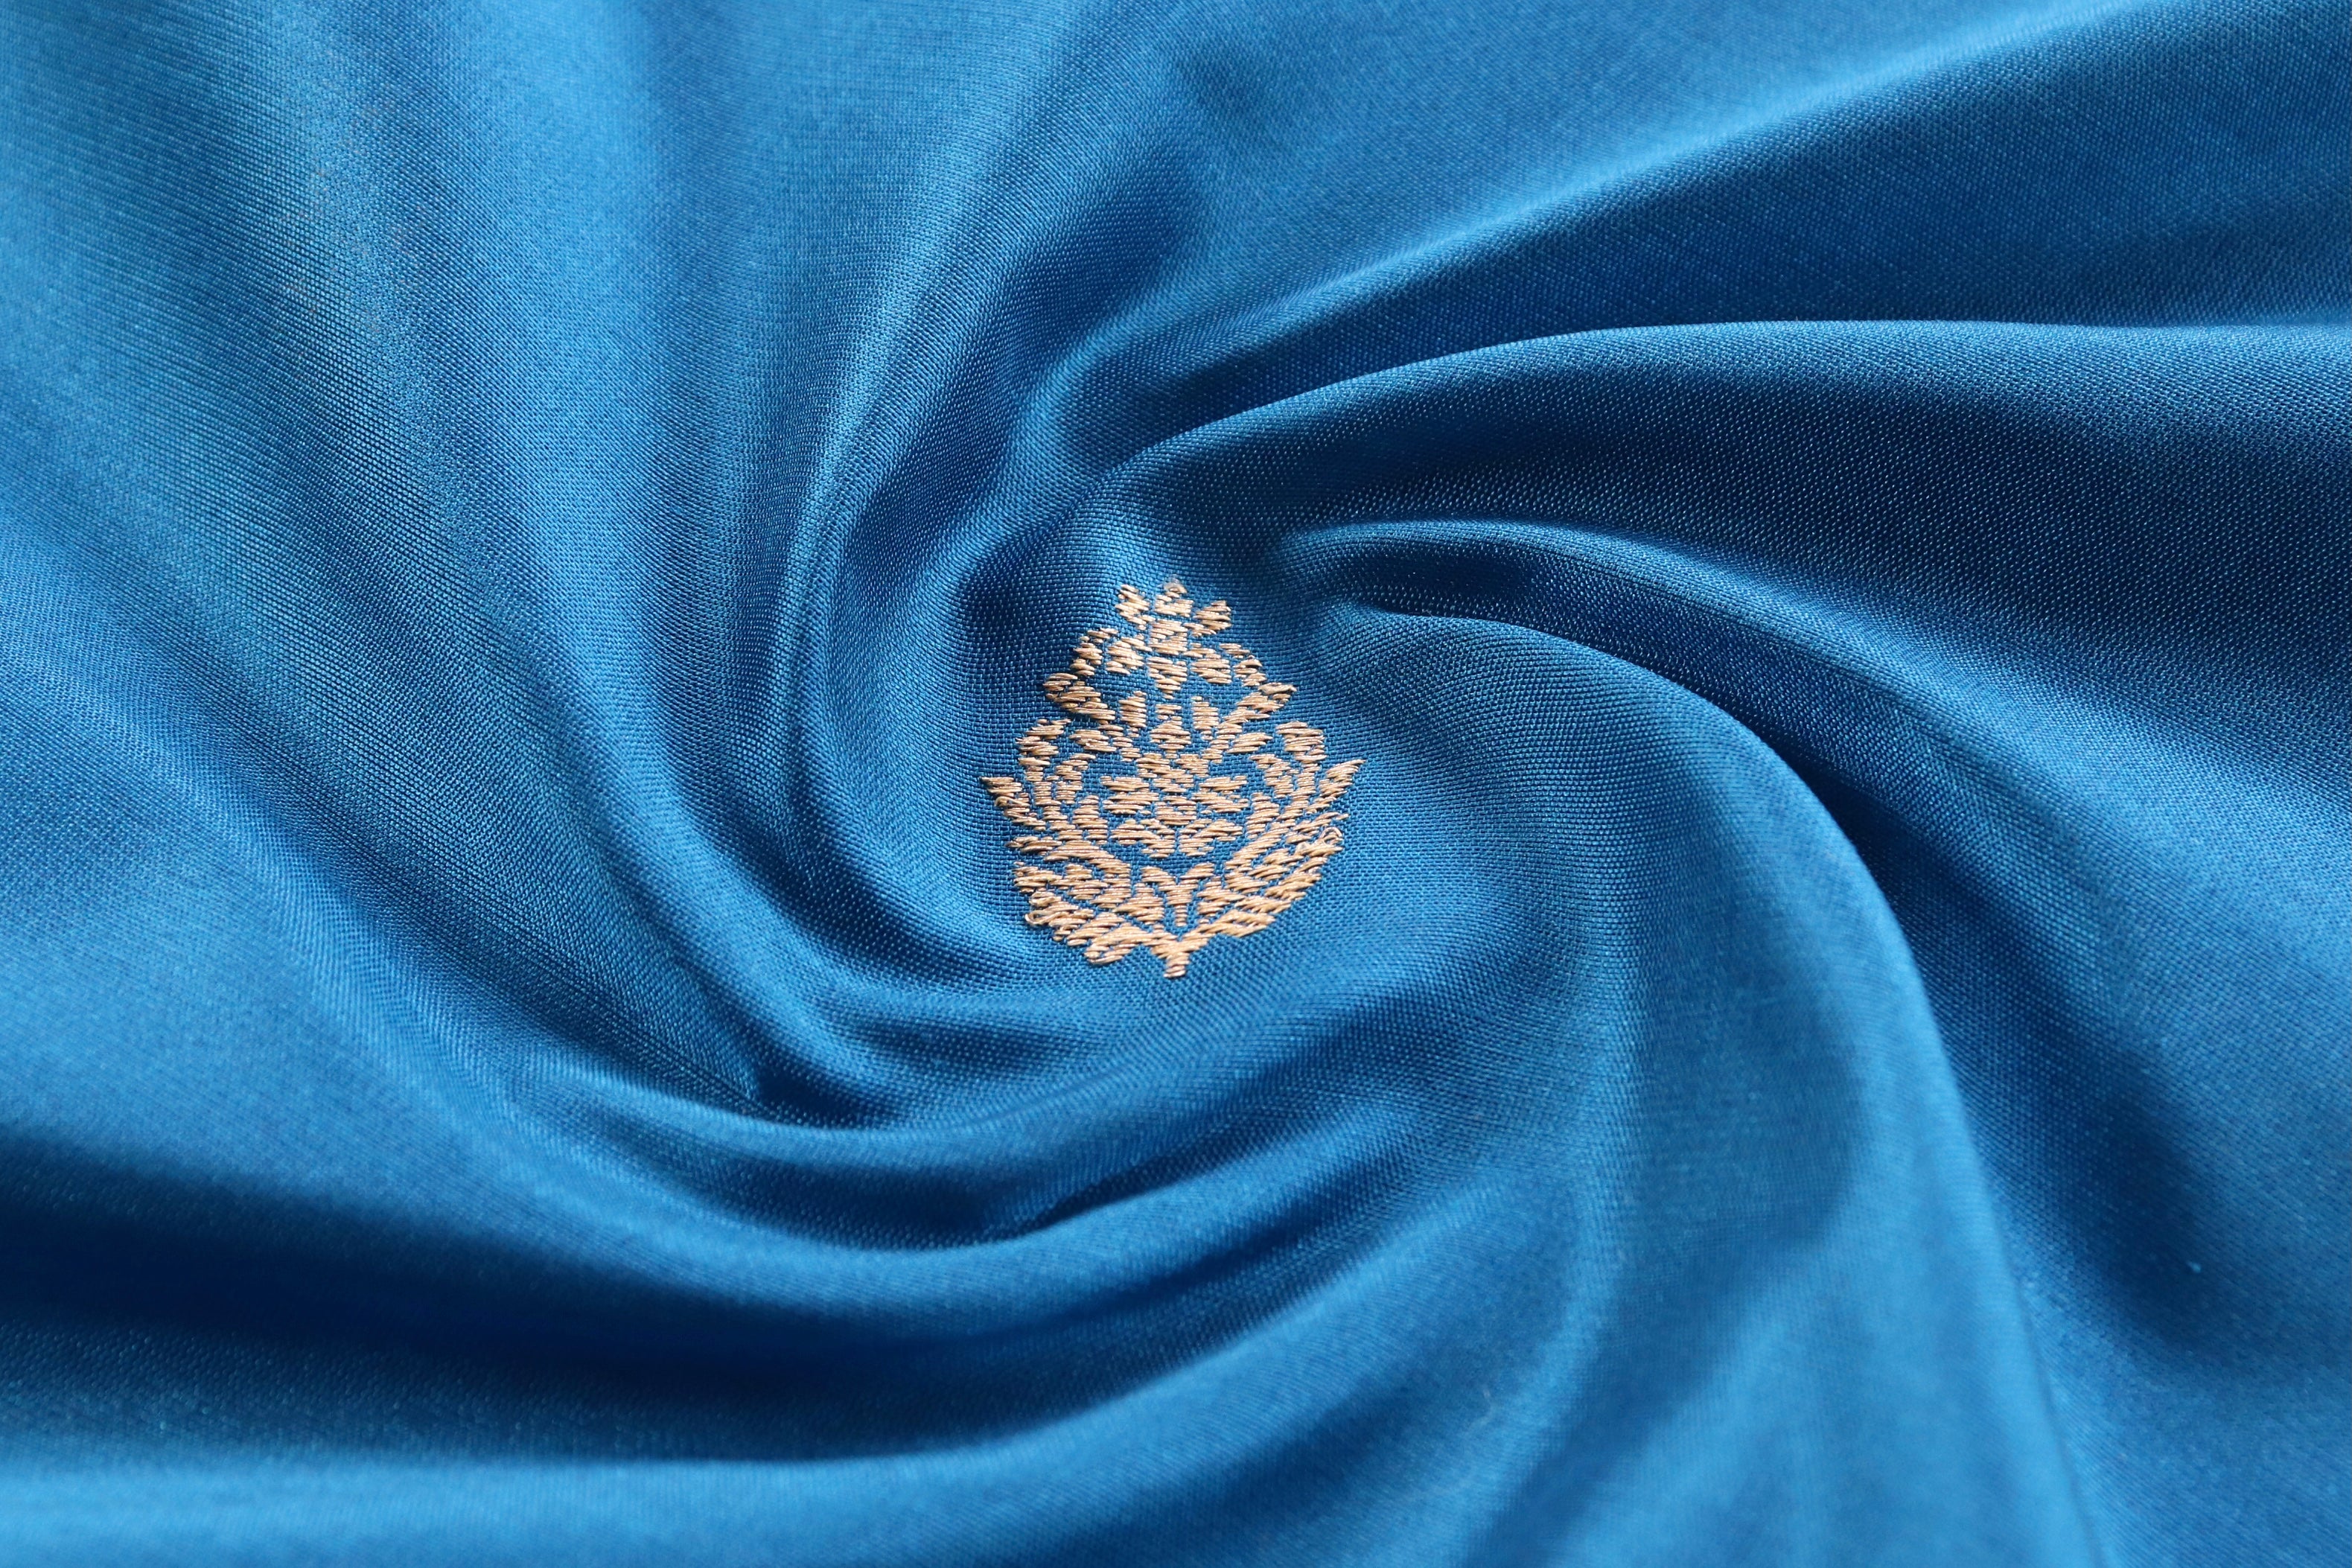 Peacock Blue Floral Motif Pure Silk Handloom Banarasi Fabric